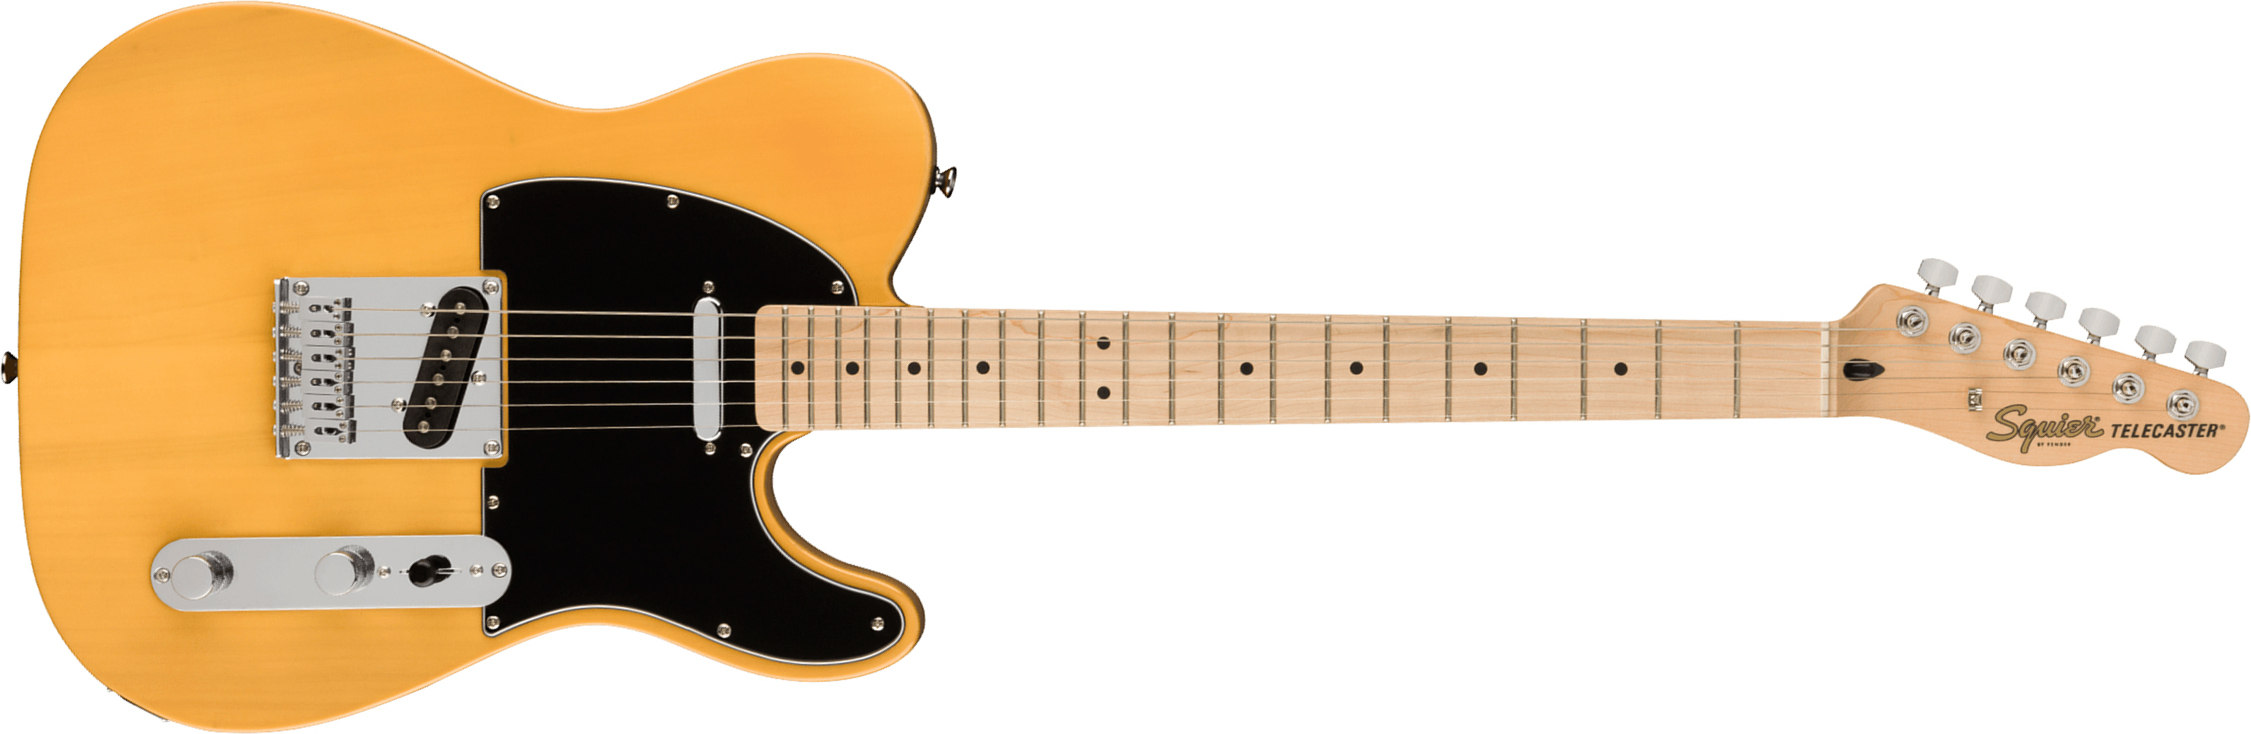 Squier Tele Affinity 2021 2s Mn - Butterscotch Blonde - Guitarra eléctrica con forma de tel - Main picture